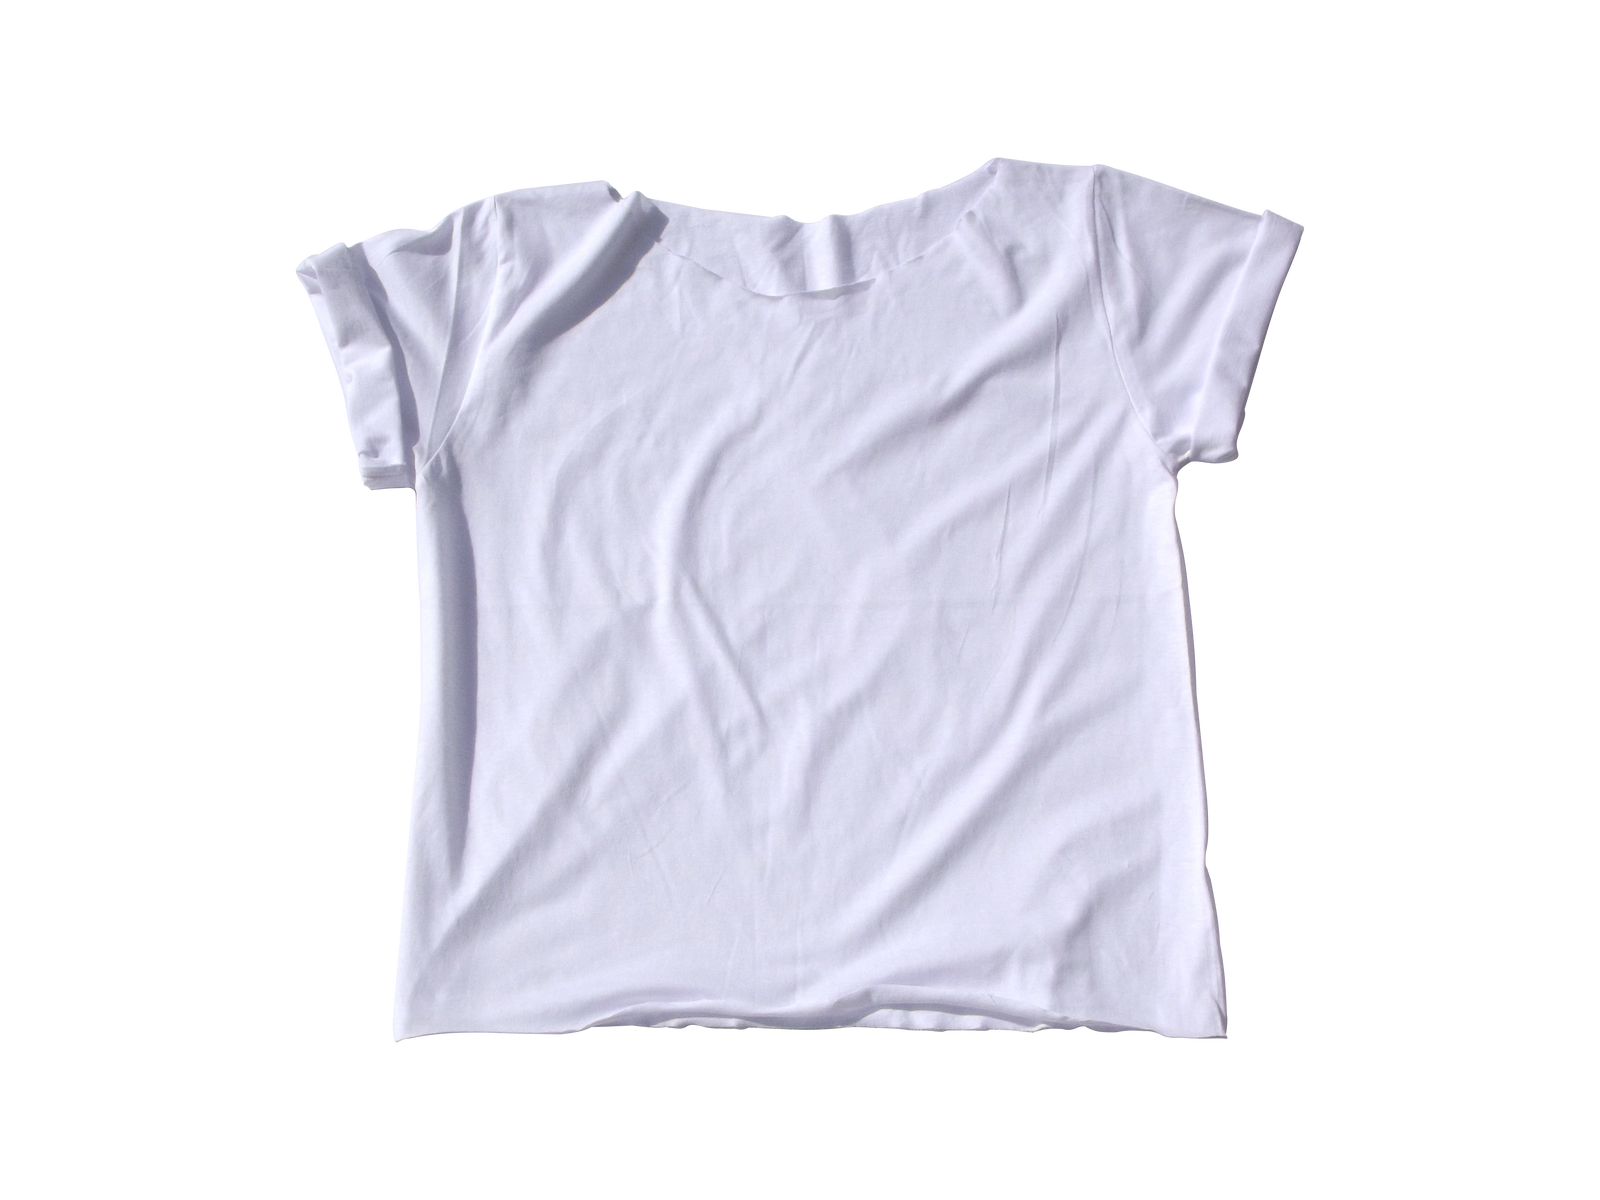 White T-shirt png by Adagem on DeviantArt